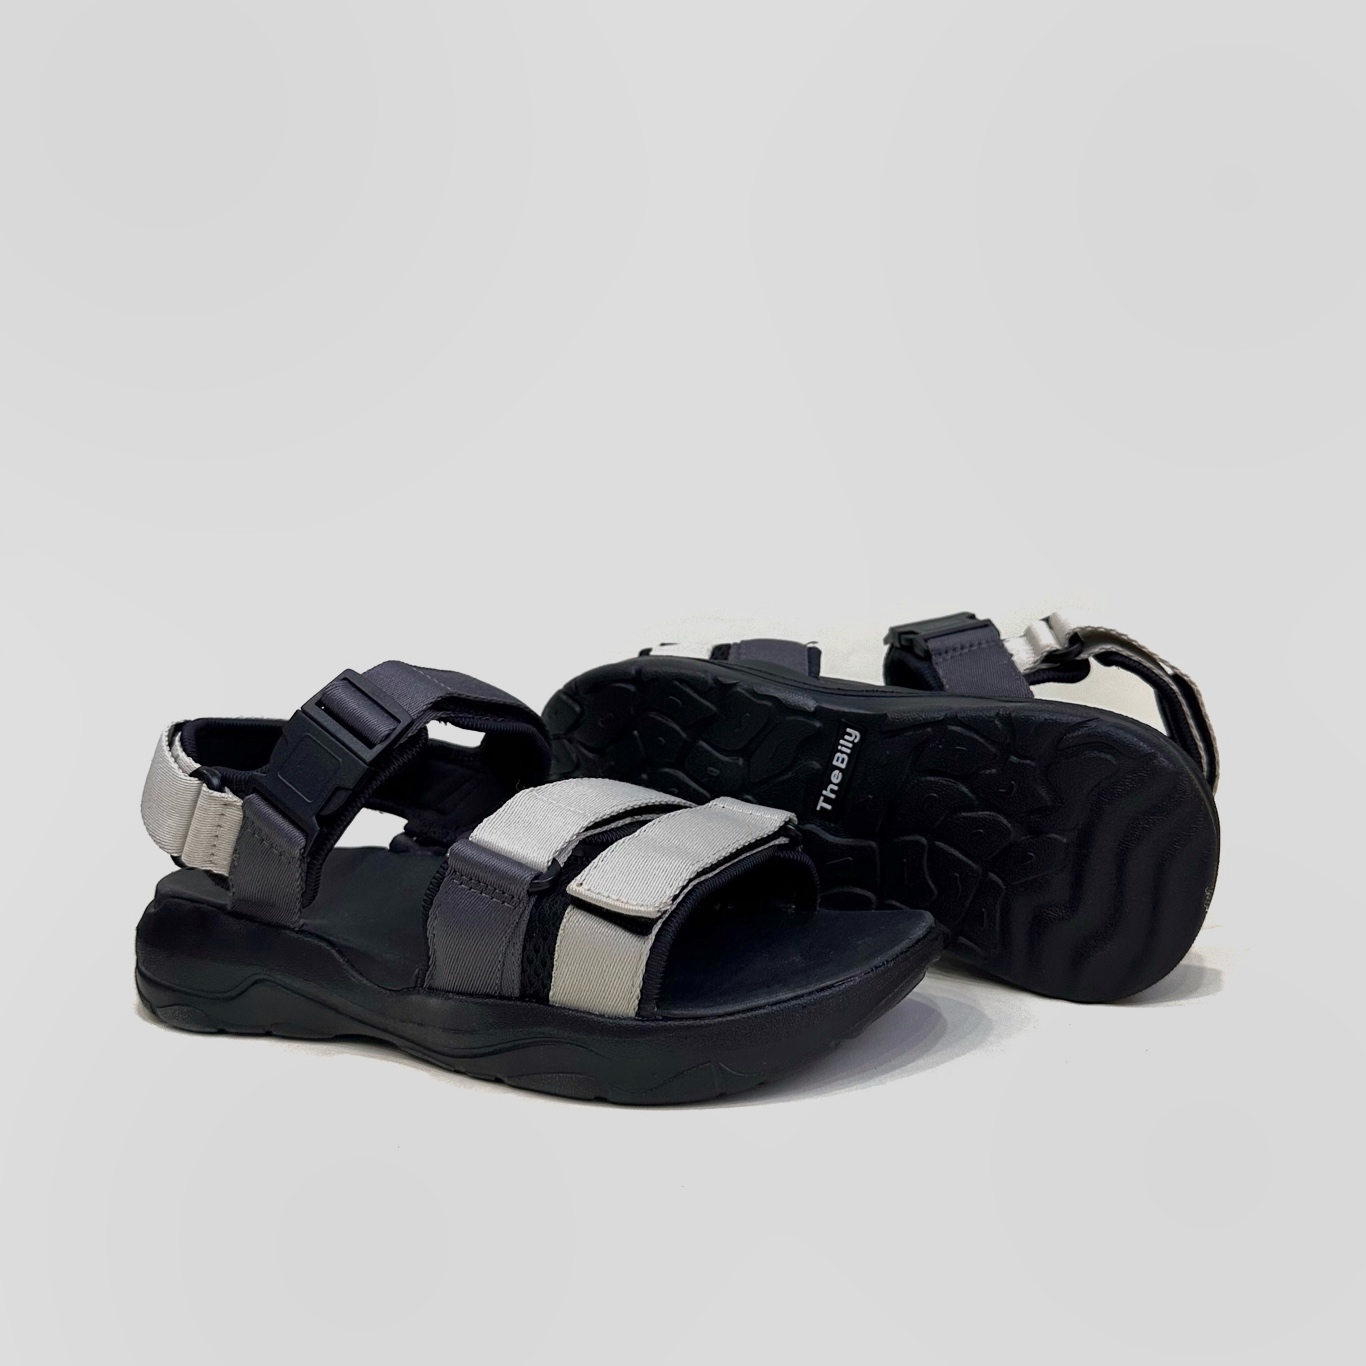 Giày Sandal Nam Nữ Unisex The BiLy Quai Ngang Dây Dù Đế IP Siêu Êm Nhẹ Màu Xám Trắng-BL05